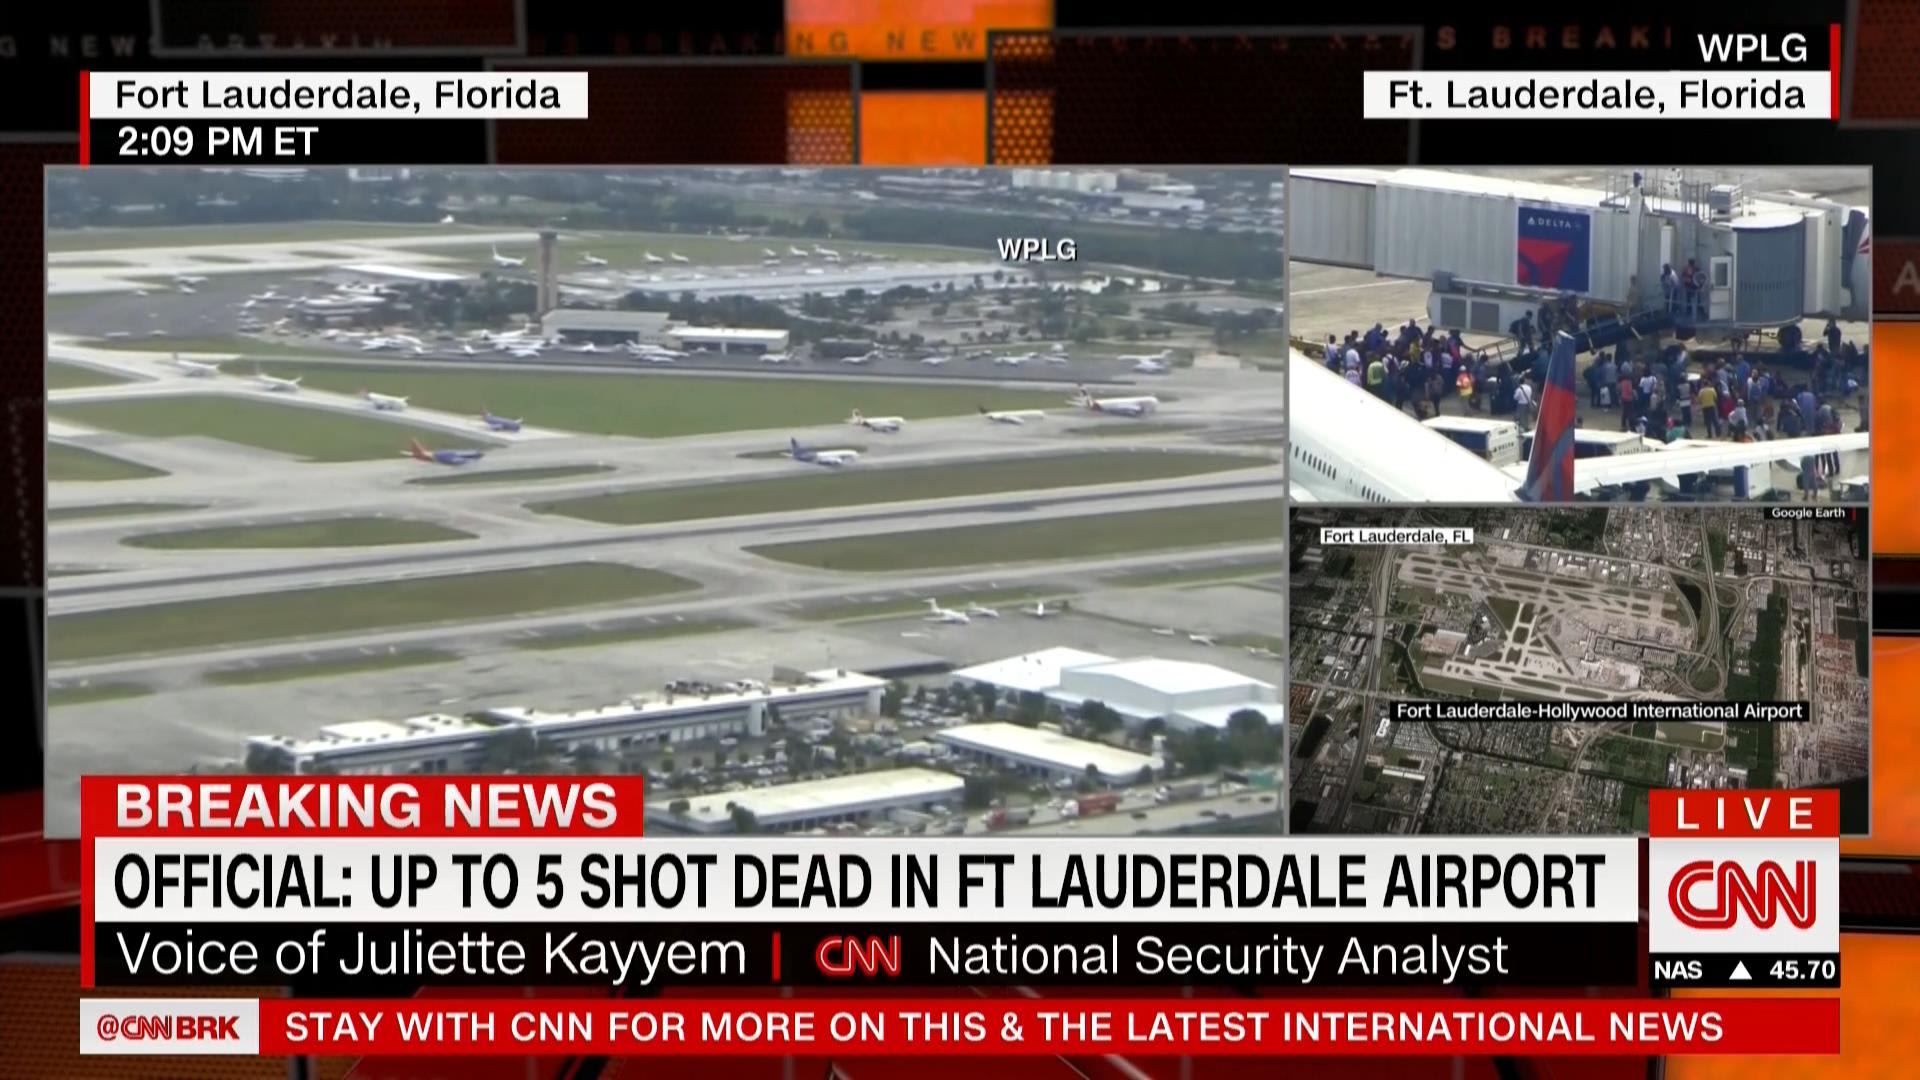 مصادر أمنية لـCNN: ارتفاع عدد قتلى إطلاق النار في مطار "فورت لودرديل" في فلوريدا إلى 5 أشخاص على الأقل